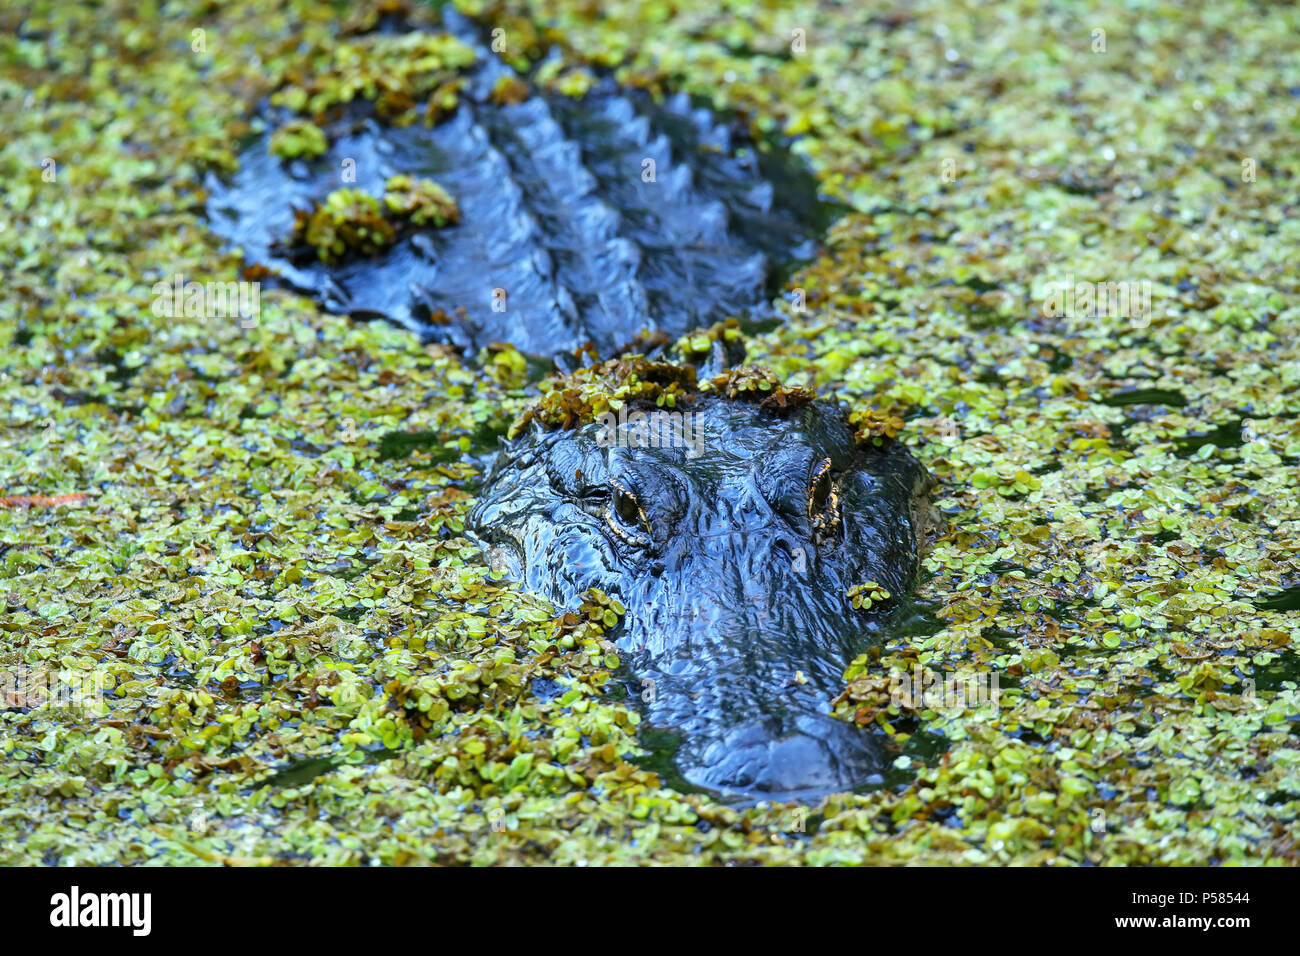 Alligator (Alligator mississippiensis) in a swamp Stock Photo